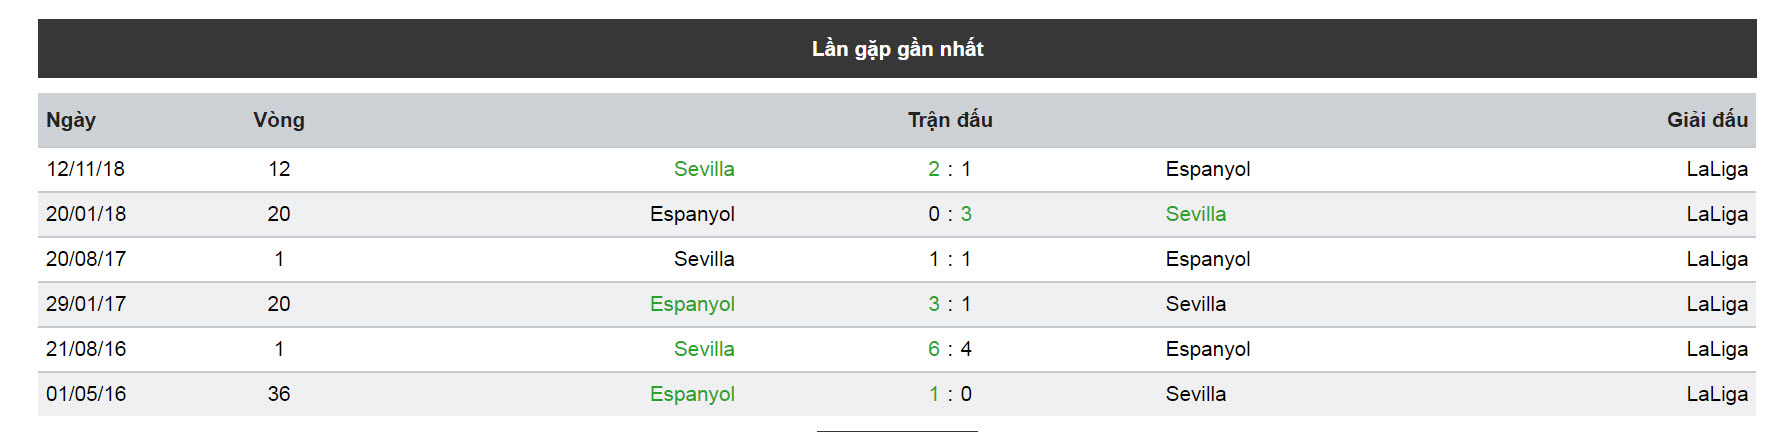 Nhận định, soi kèo trận Espanyol vs Sevilla 17/03/19 VĐQG Tây Ban Nha 5